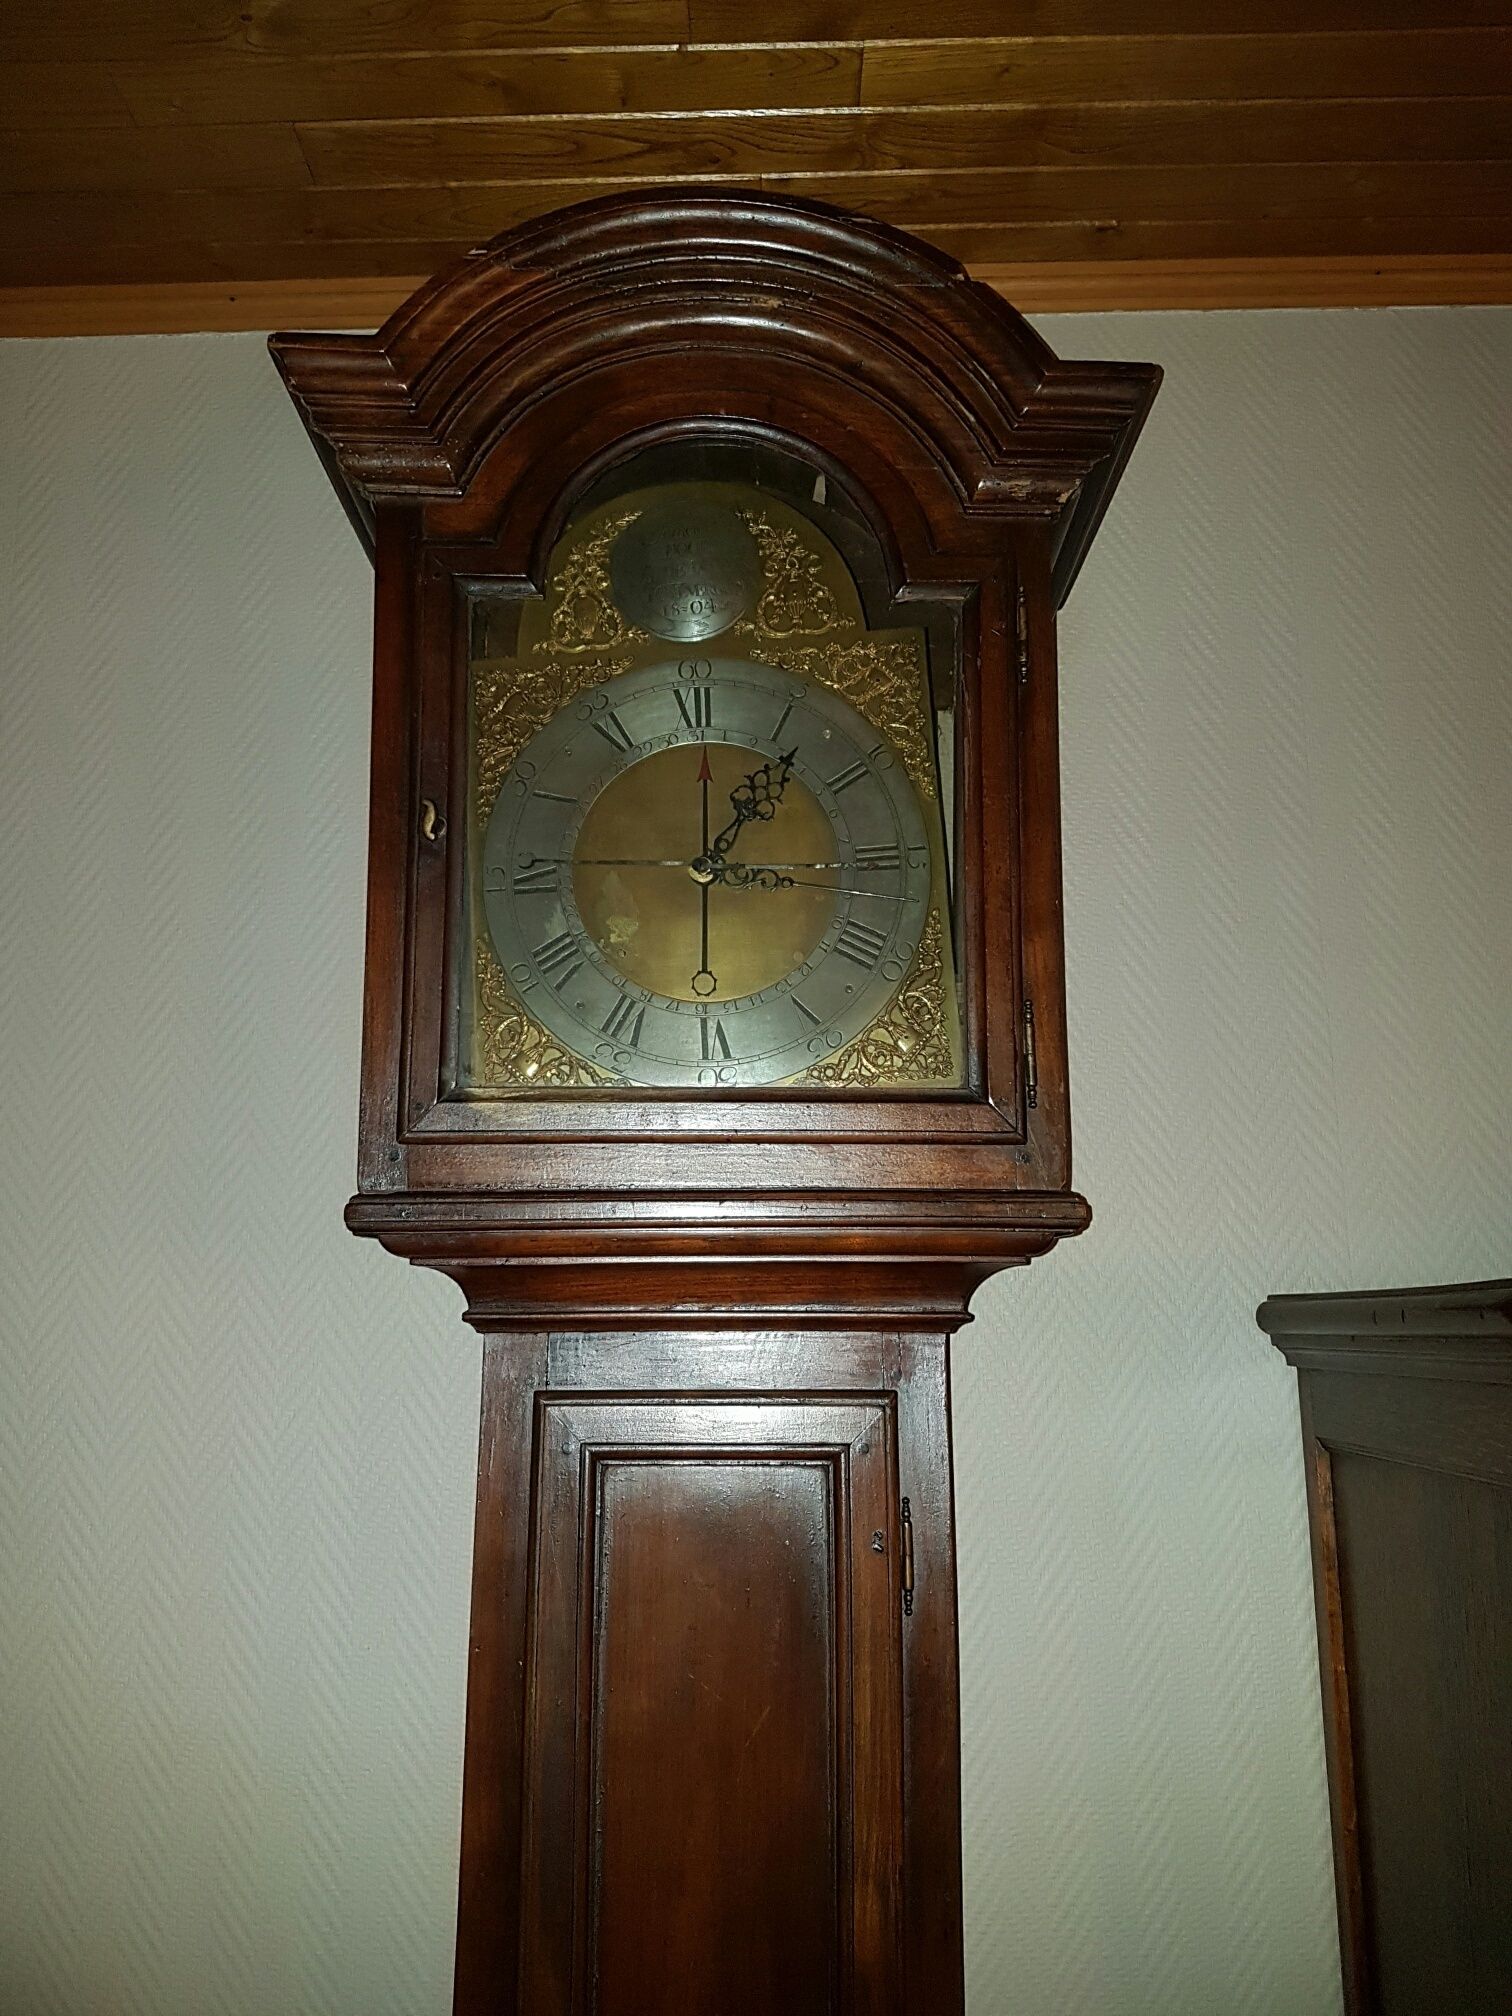 kubiek Intens Oude tijden Prijsschatting oude staande klok - Vintage Horlogeforum - Horlogeforum.nl -  het forum voor liefhebbers van horloges